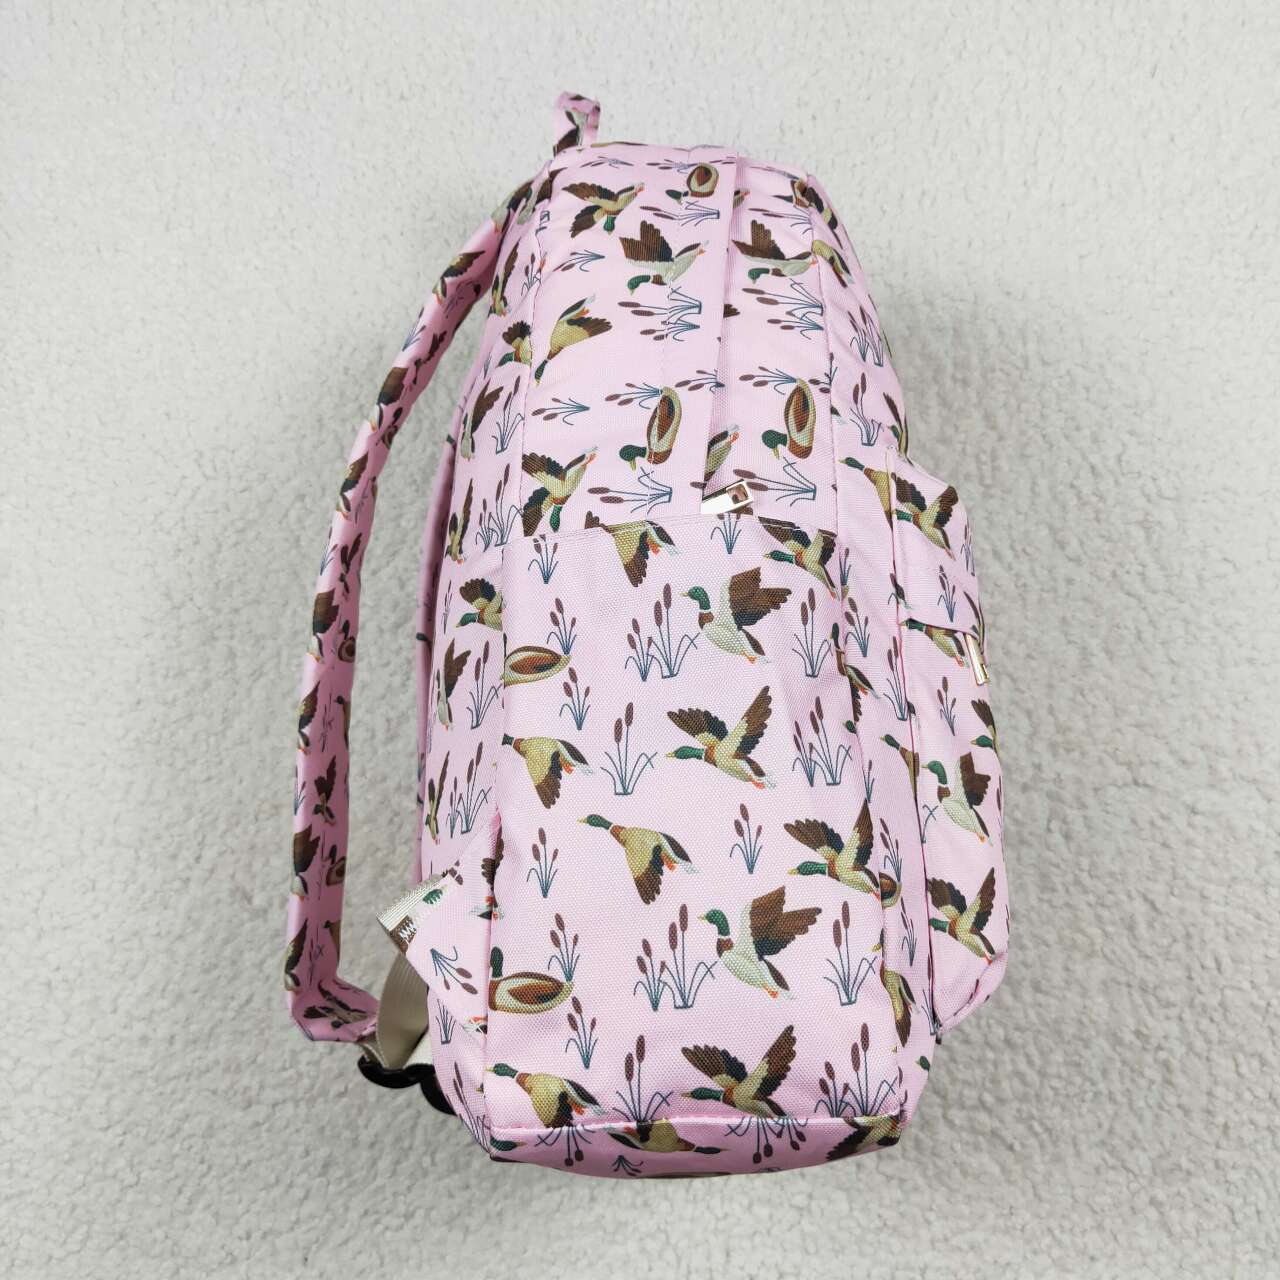 RTS no moq BA0202 Duck pink backpack